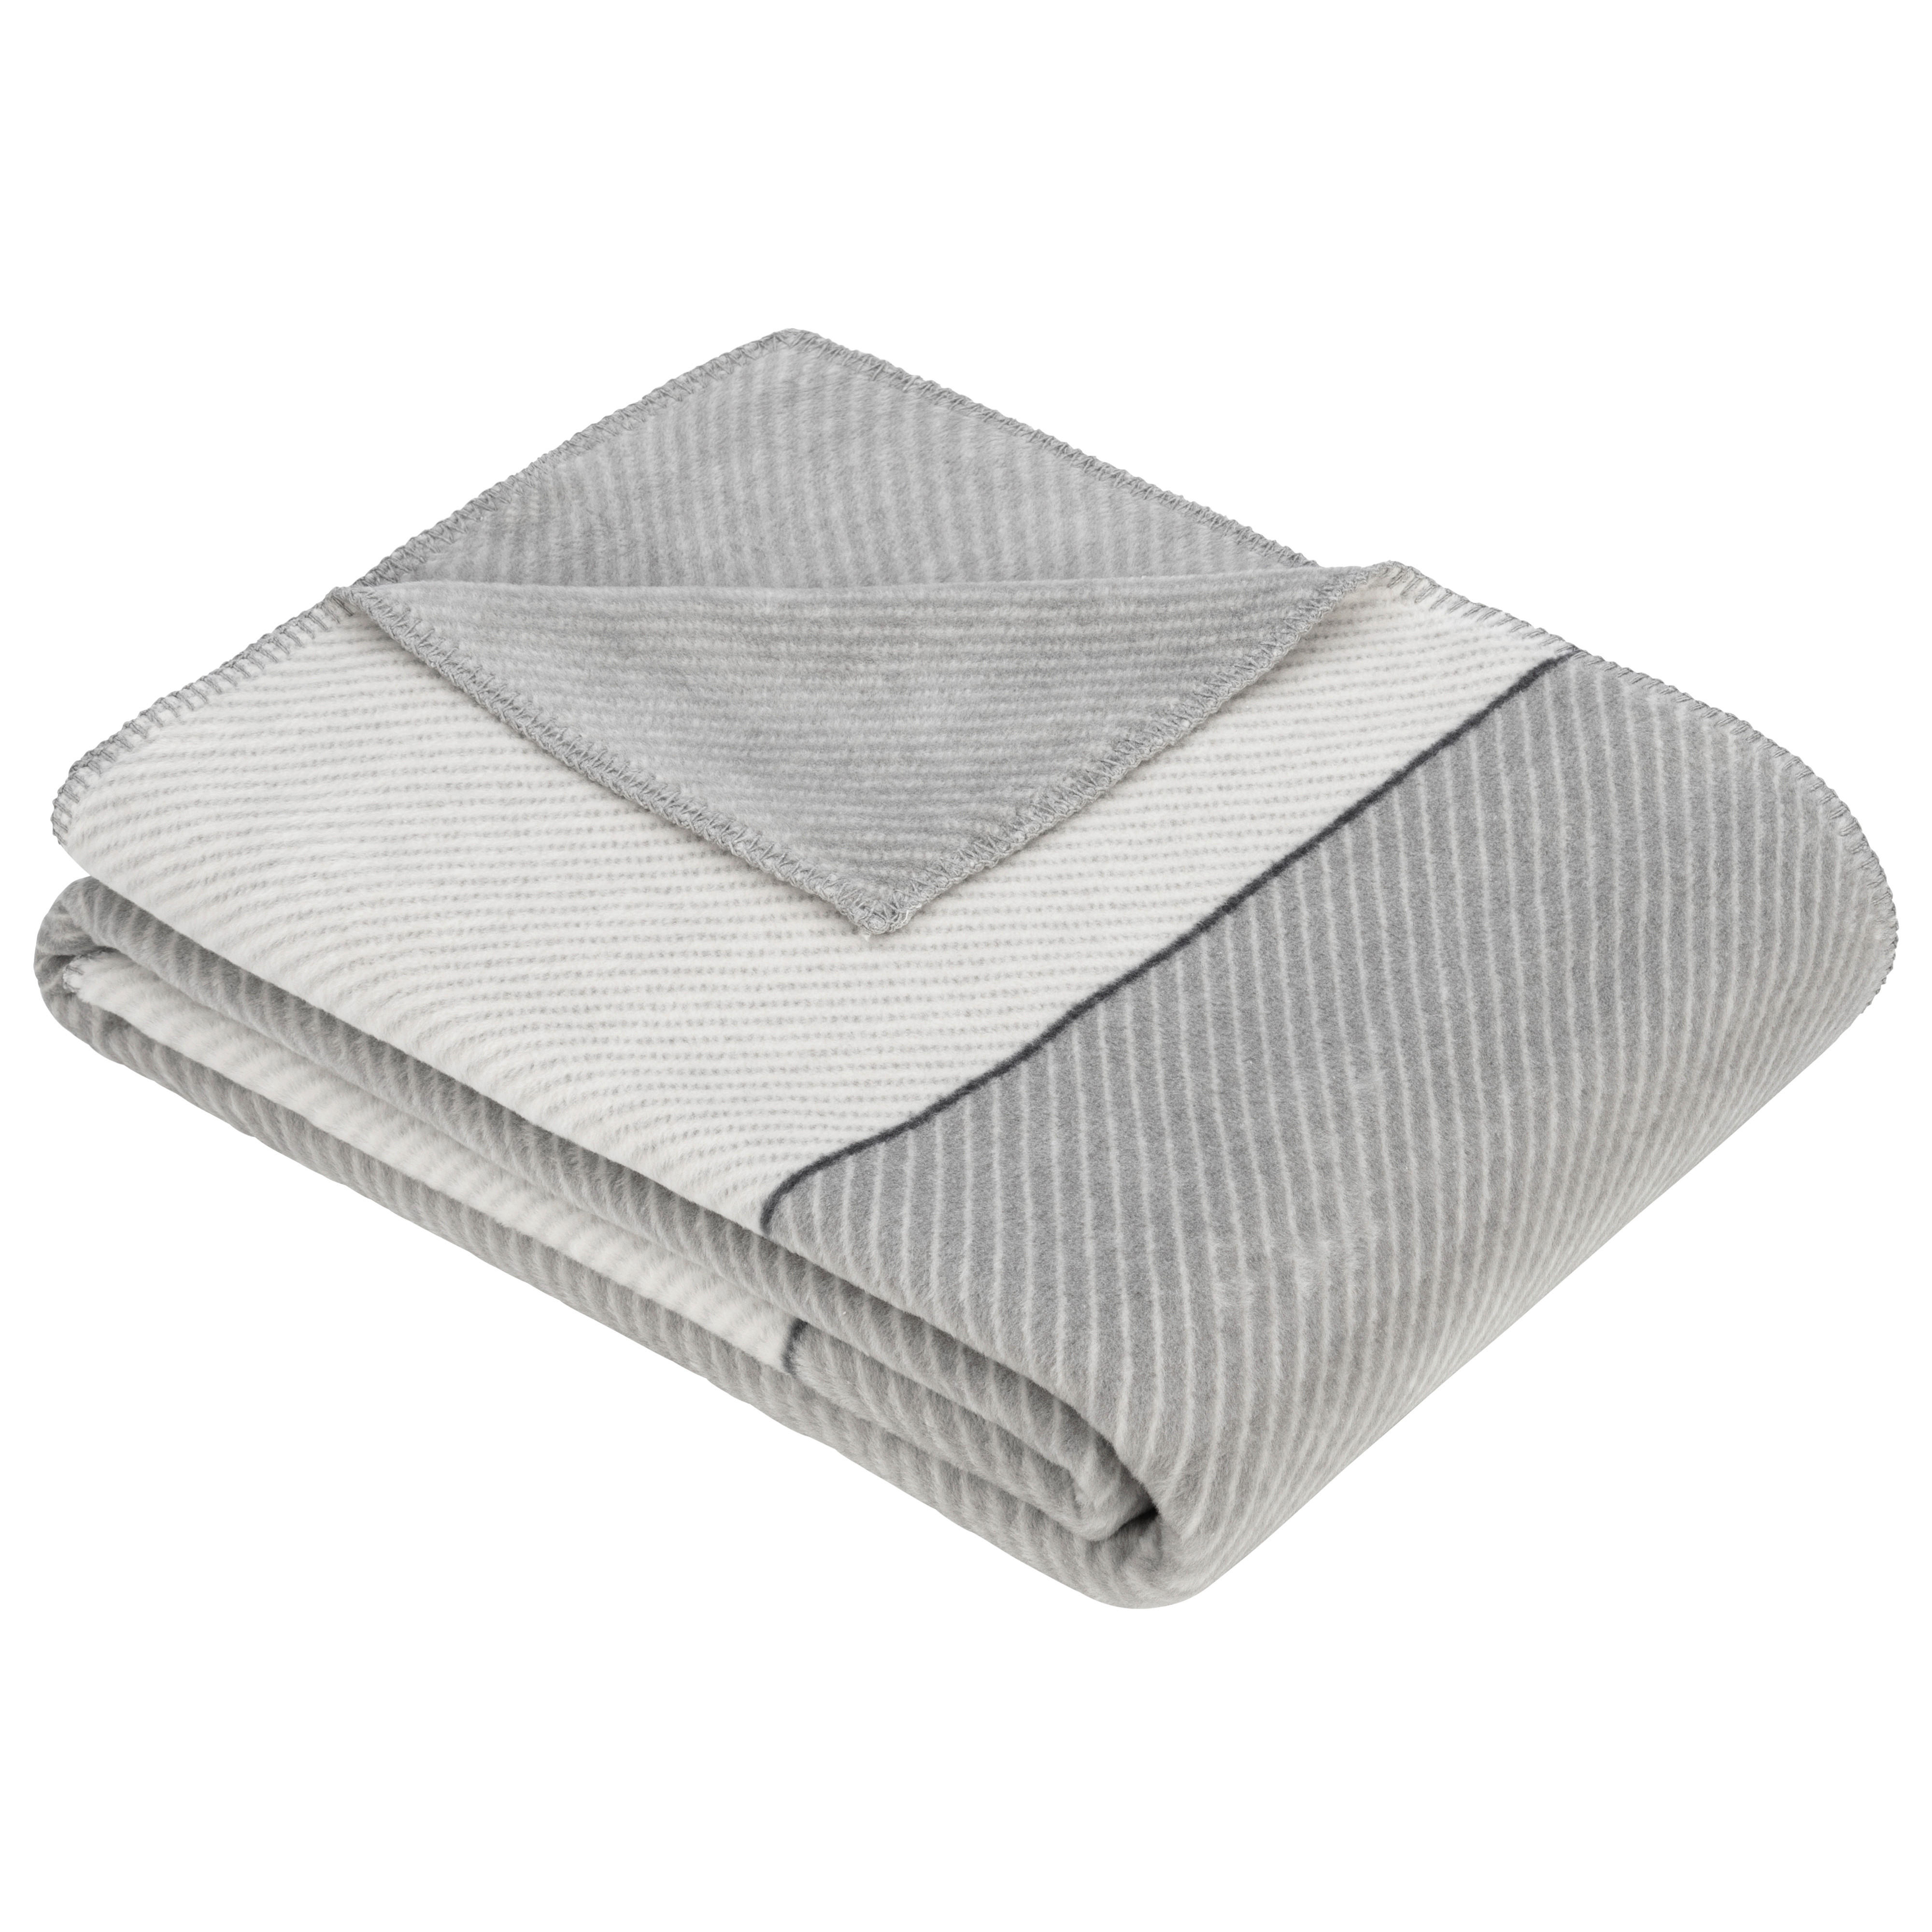 WOHNDECKE 150/200 cm  - Weiß/Grau, KONVENTIONELL, Textil (150/200cm) - Ibena